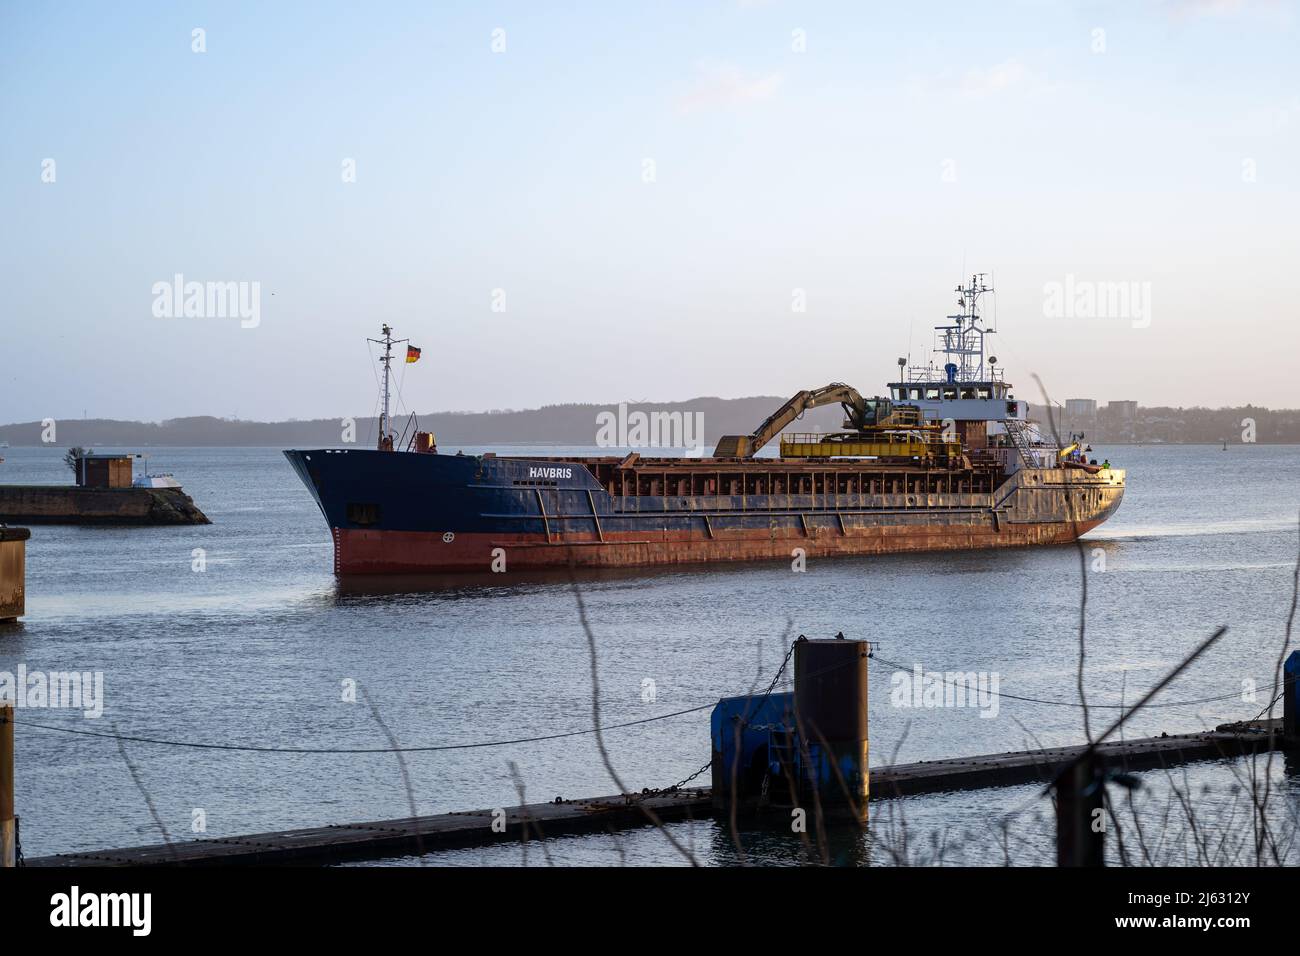 Kiel, Allemagne - 22 février 2022 : un navire maritime entre dans le canal de Kiel depuis la mer Baltique. Le canal de Kiel relie la mer Baltique à la mer du Nord Banque D'Images